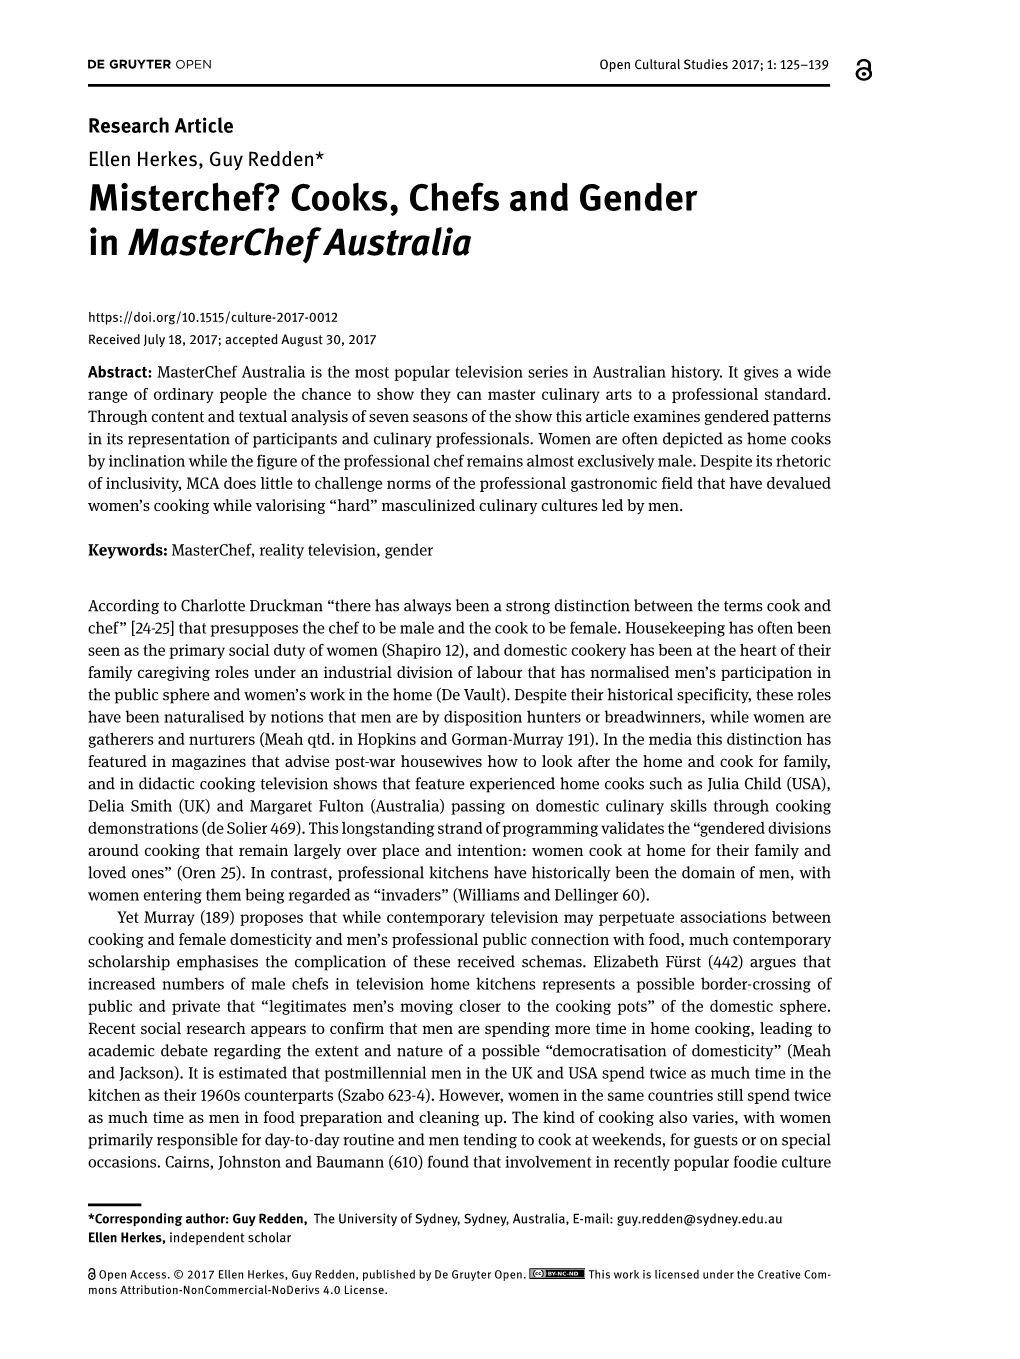 Misterchef? Cooks, Chefs and Gender in Masterchef Australia